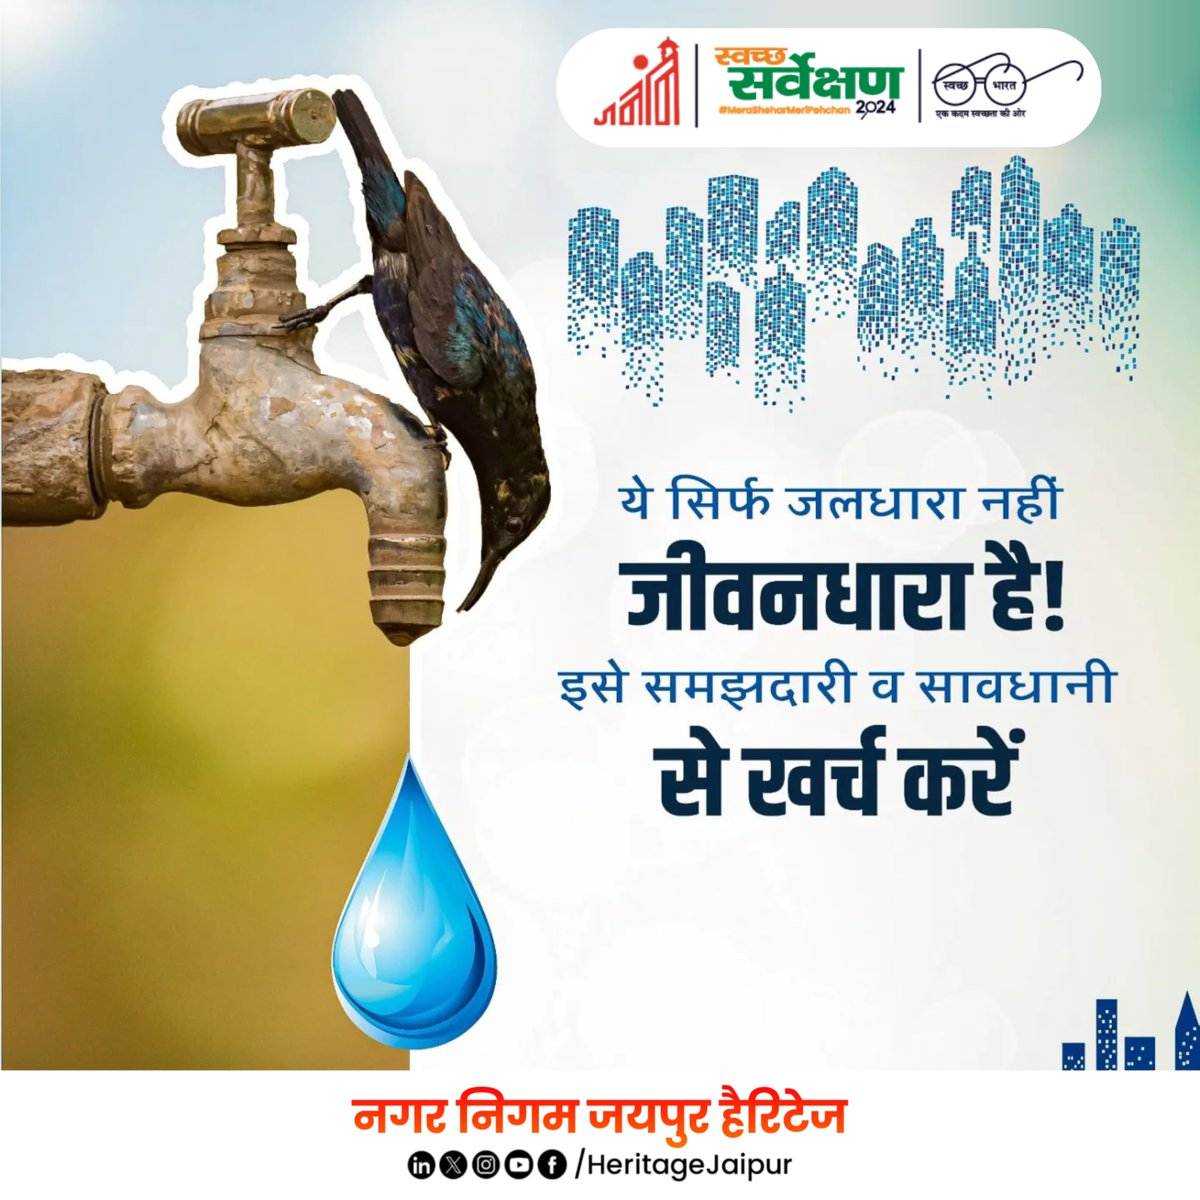 हर बूंद में छुपा है हमारा भविष्य। आओ, पानी की बचत करें और एक स्वस्थ और संतुलित पर्यावरण के लिए योगदान दें।

#Rajasthan 
#SwachhBharat #SwachhSurveksh2024
#GarbageFreeIndia #savewater #water    #jagojaipurjagmagjaipur 

@MoHUA_India | @SwachhBharatGov | @Secretary_MoHUA |